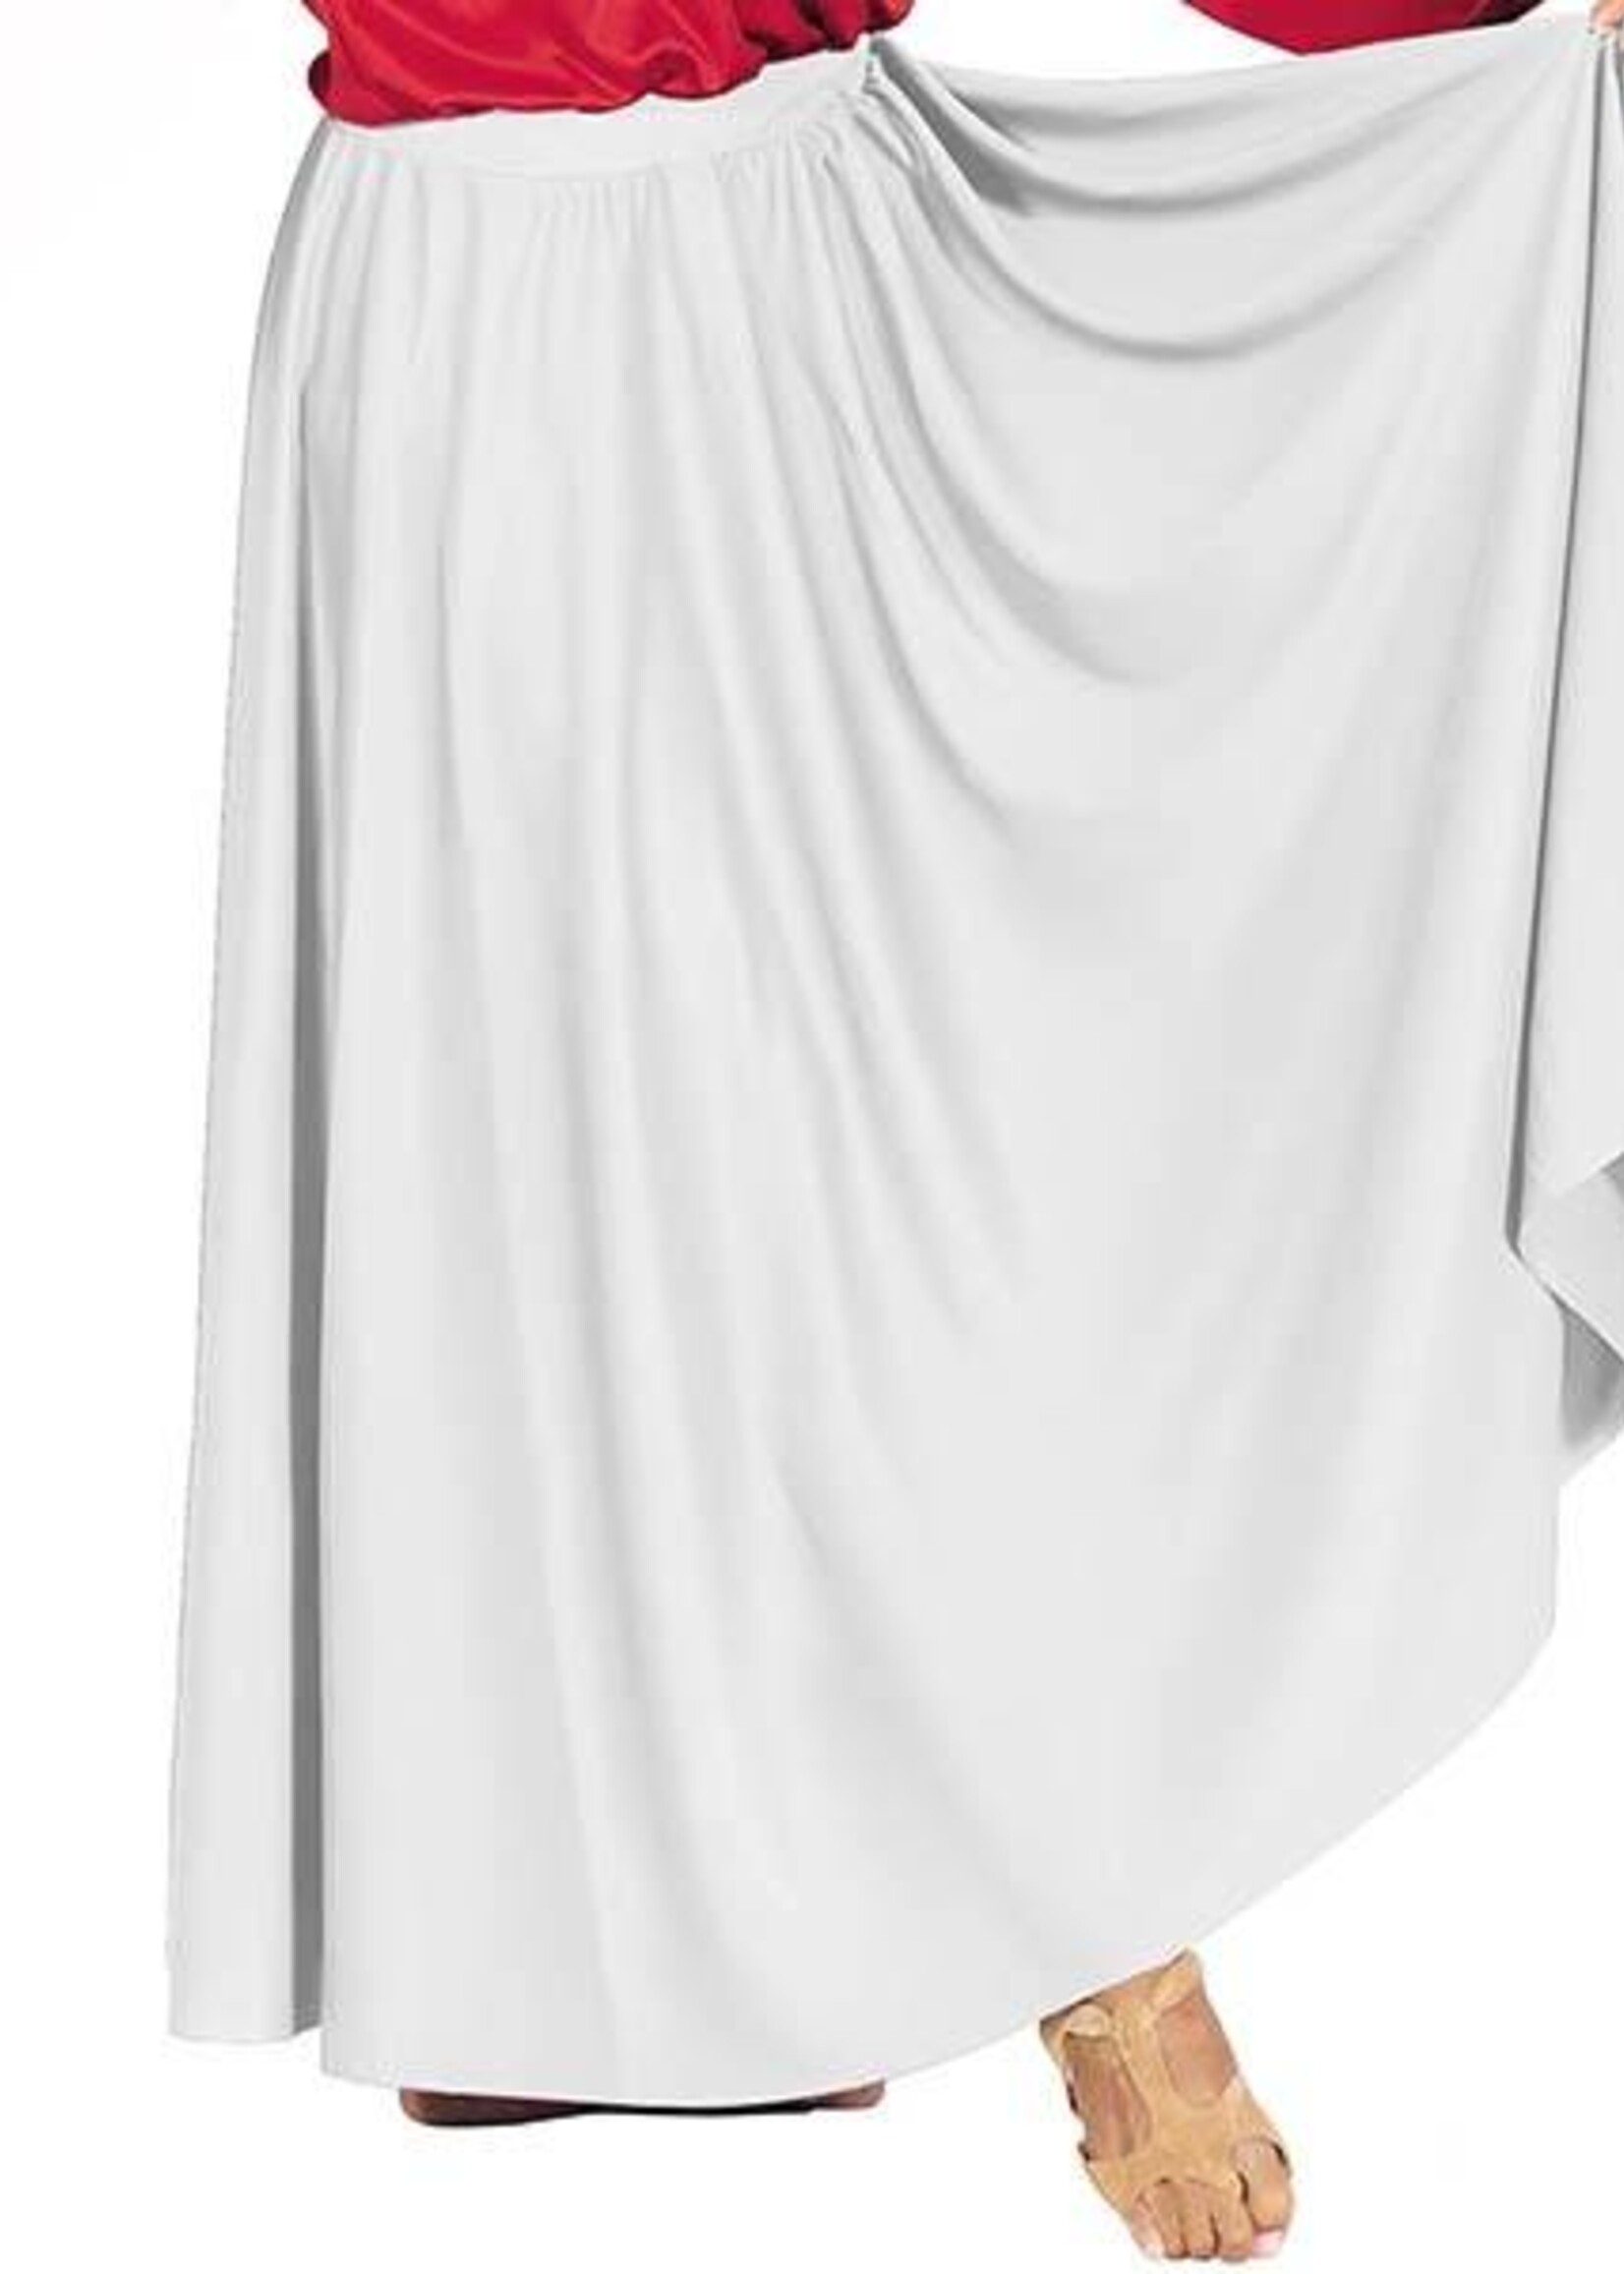 Eurotard 13778p- Adult Plus Size Lyrical Circle Skirt White OSFA